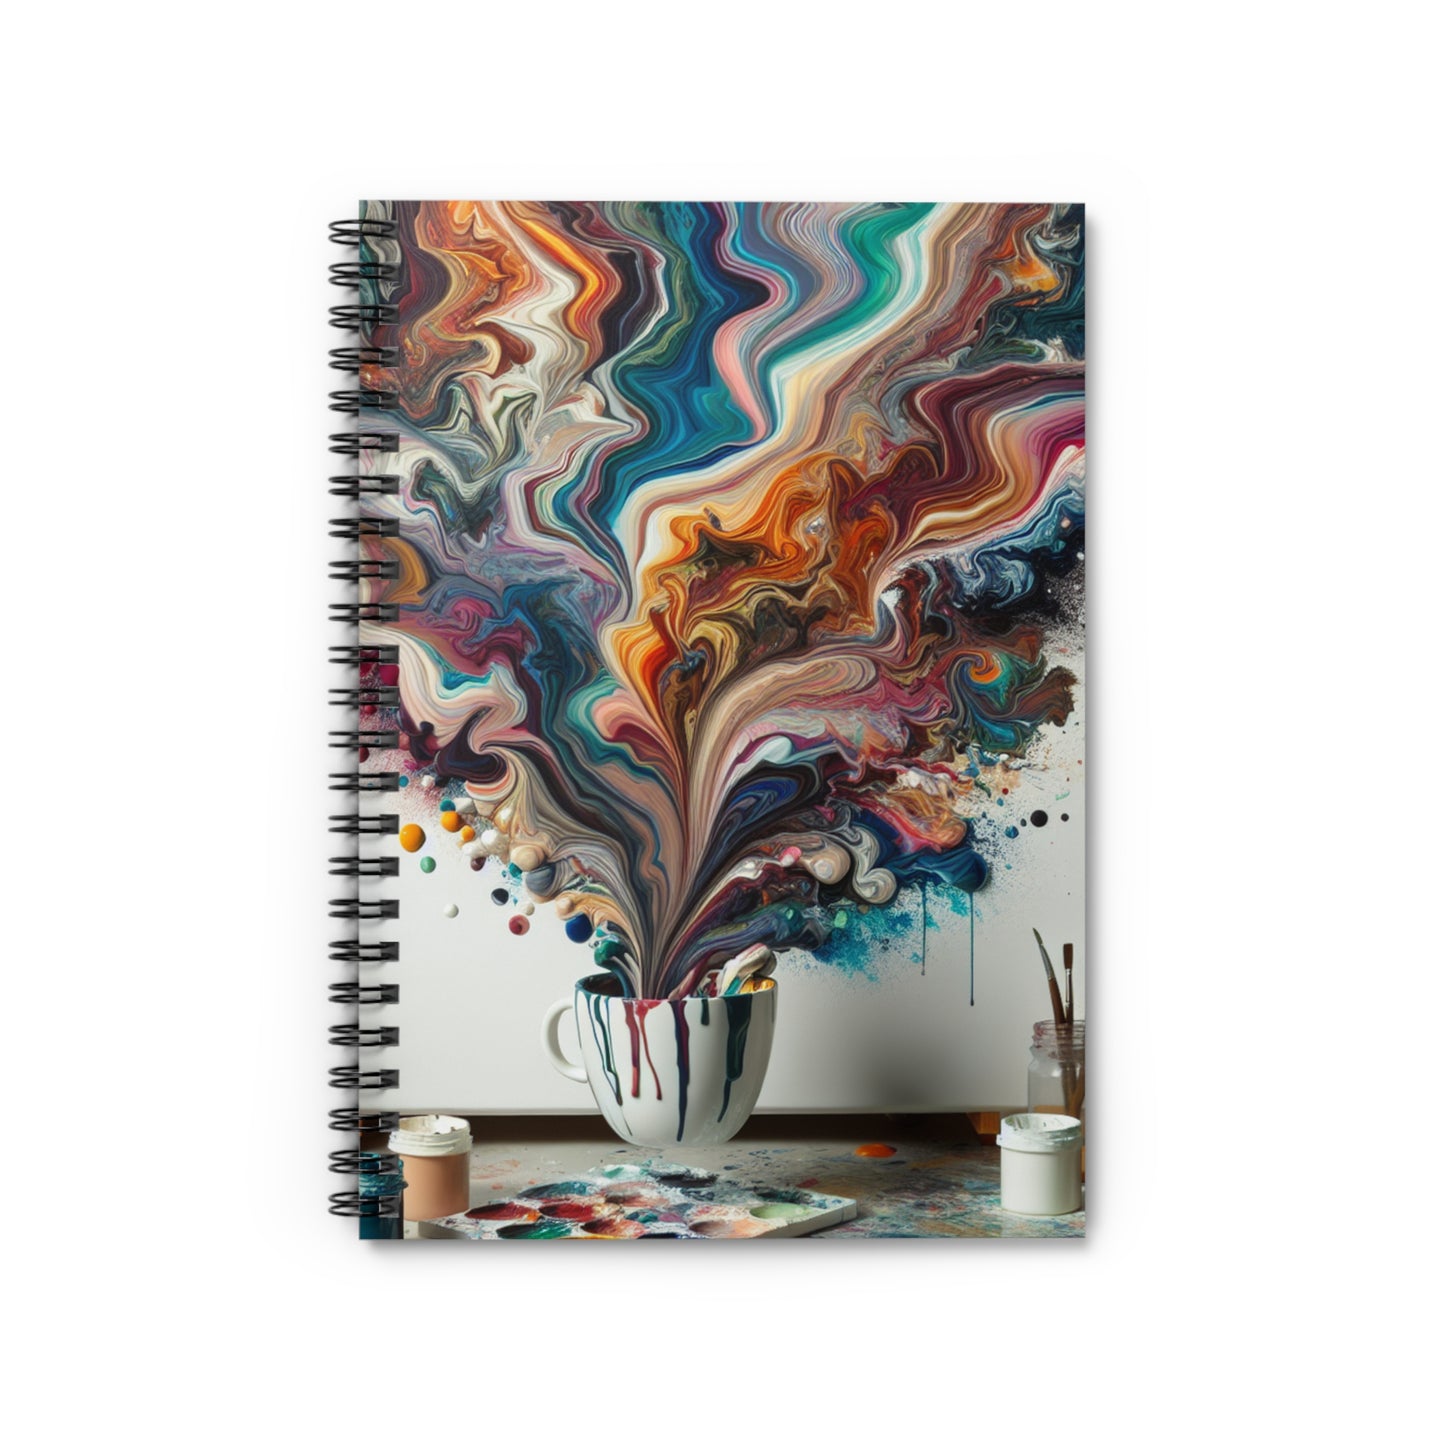 "Un paradis de peinture coulée : Art de coulée acrylique" - Le carnet à spirale Alien (ligne lignée) Style de coulée acrylique